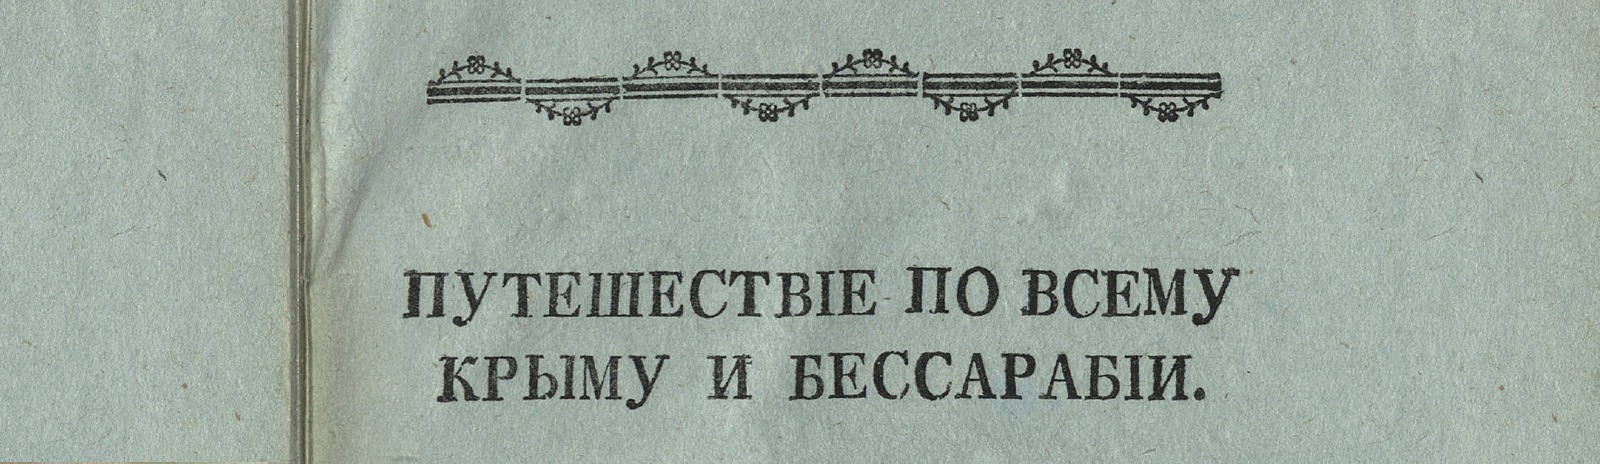 Изображение книжного памятника 'Путешествие по всему Крыму и Бессарабии в 1799 году'